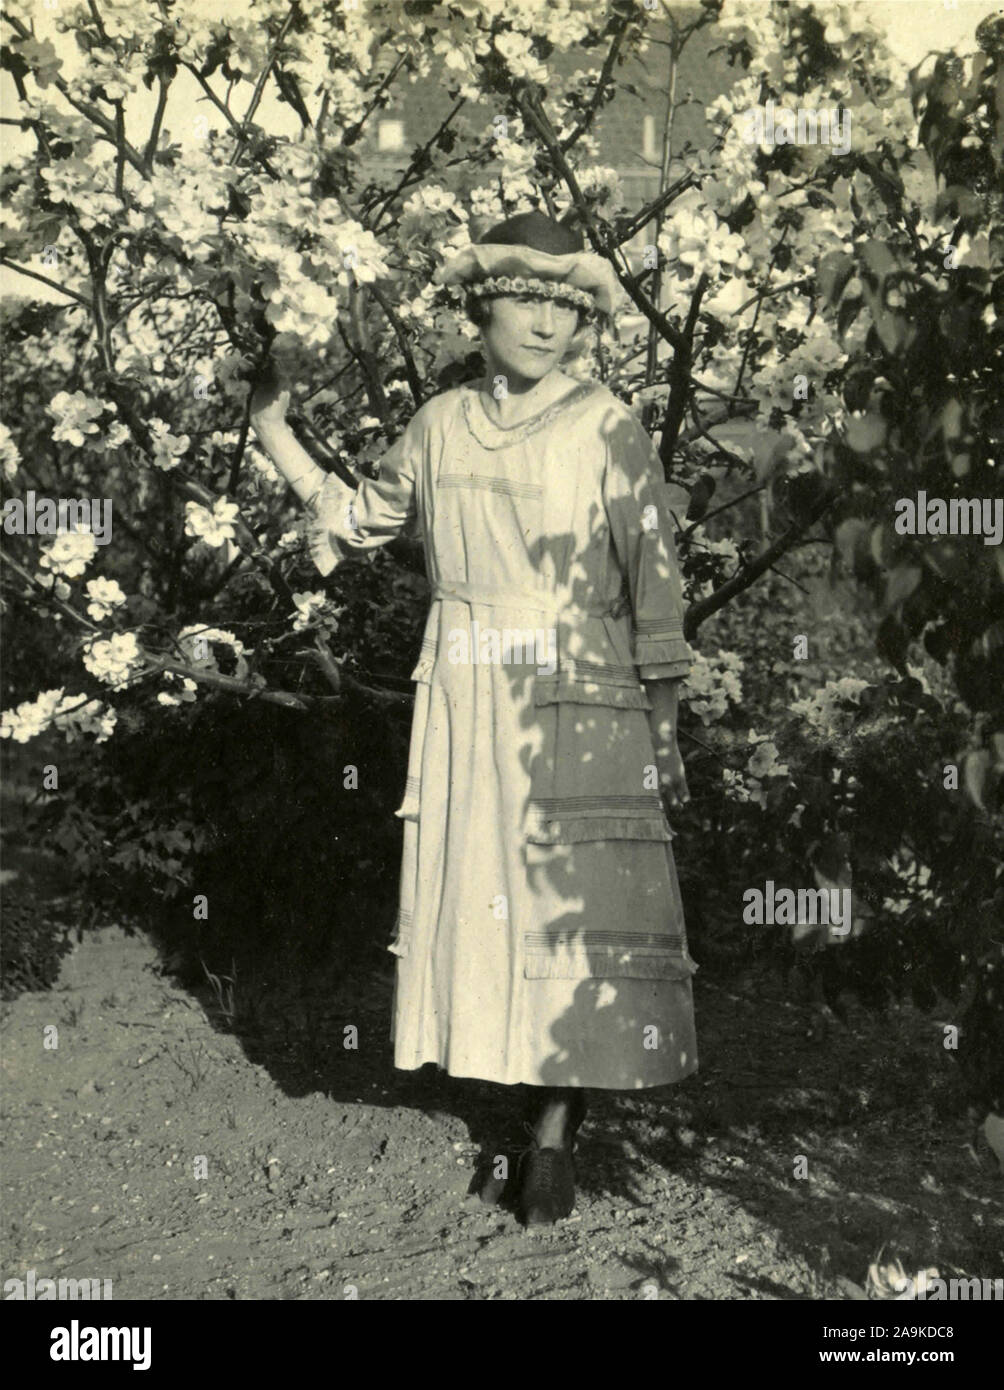 Woman with hat entre les arbres en fleurs, Danemark Banque D'Images